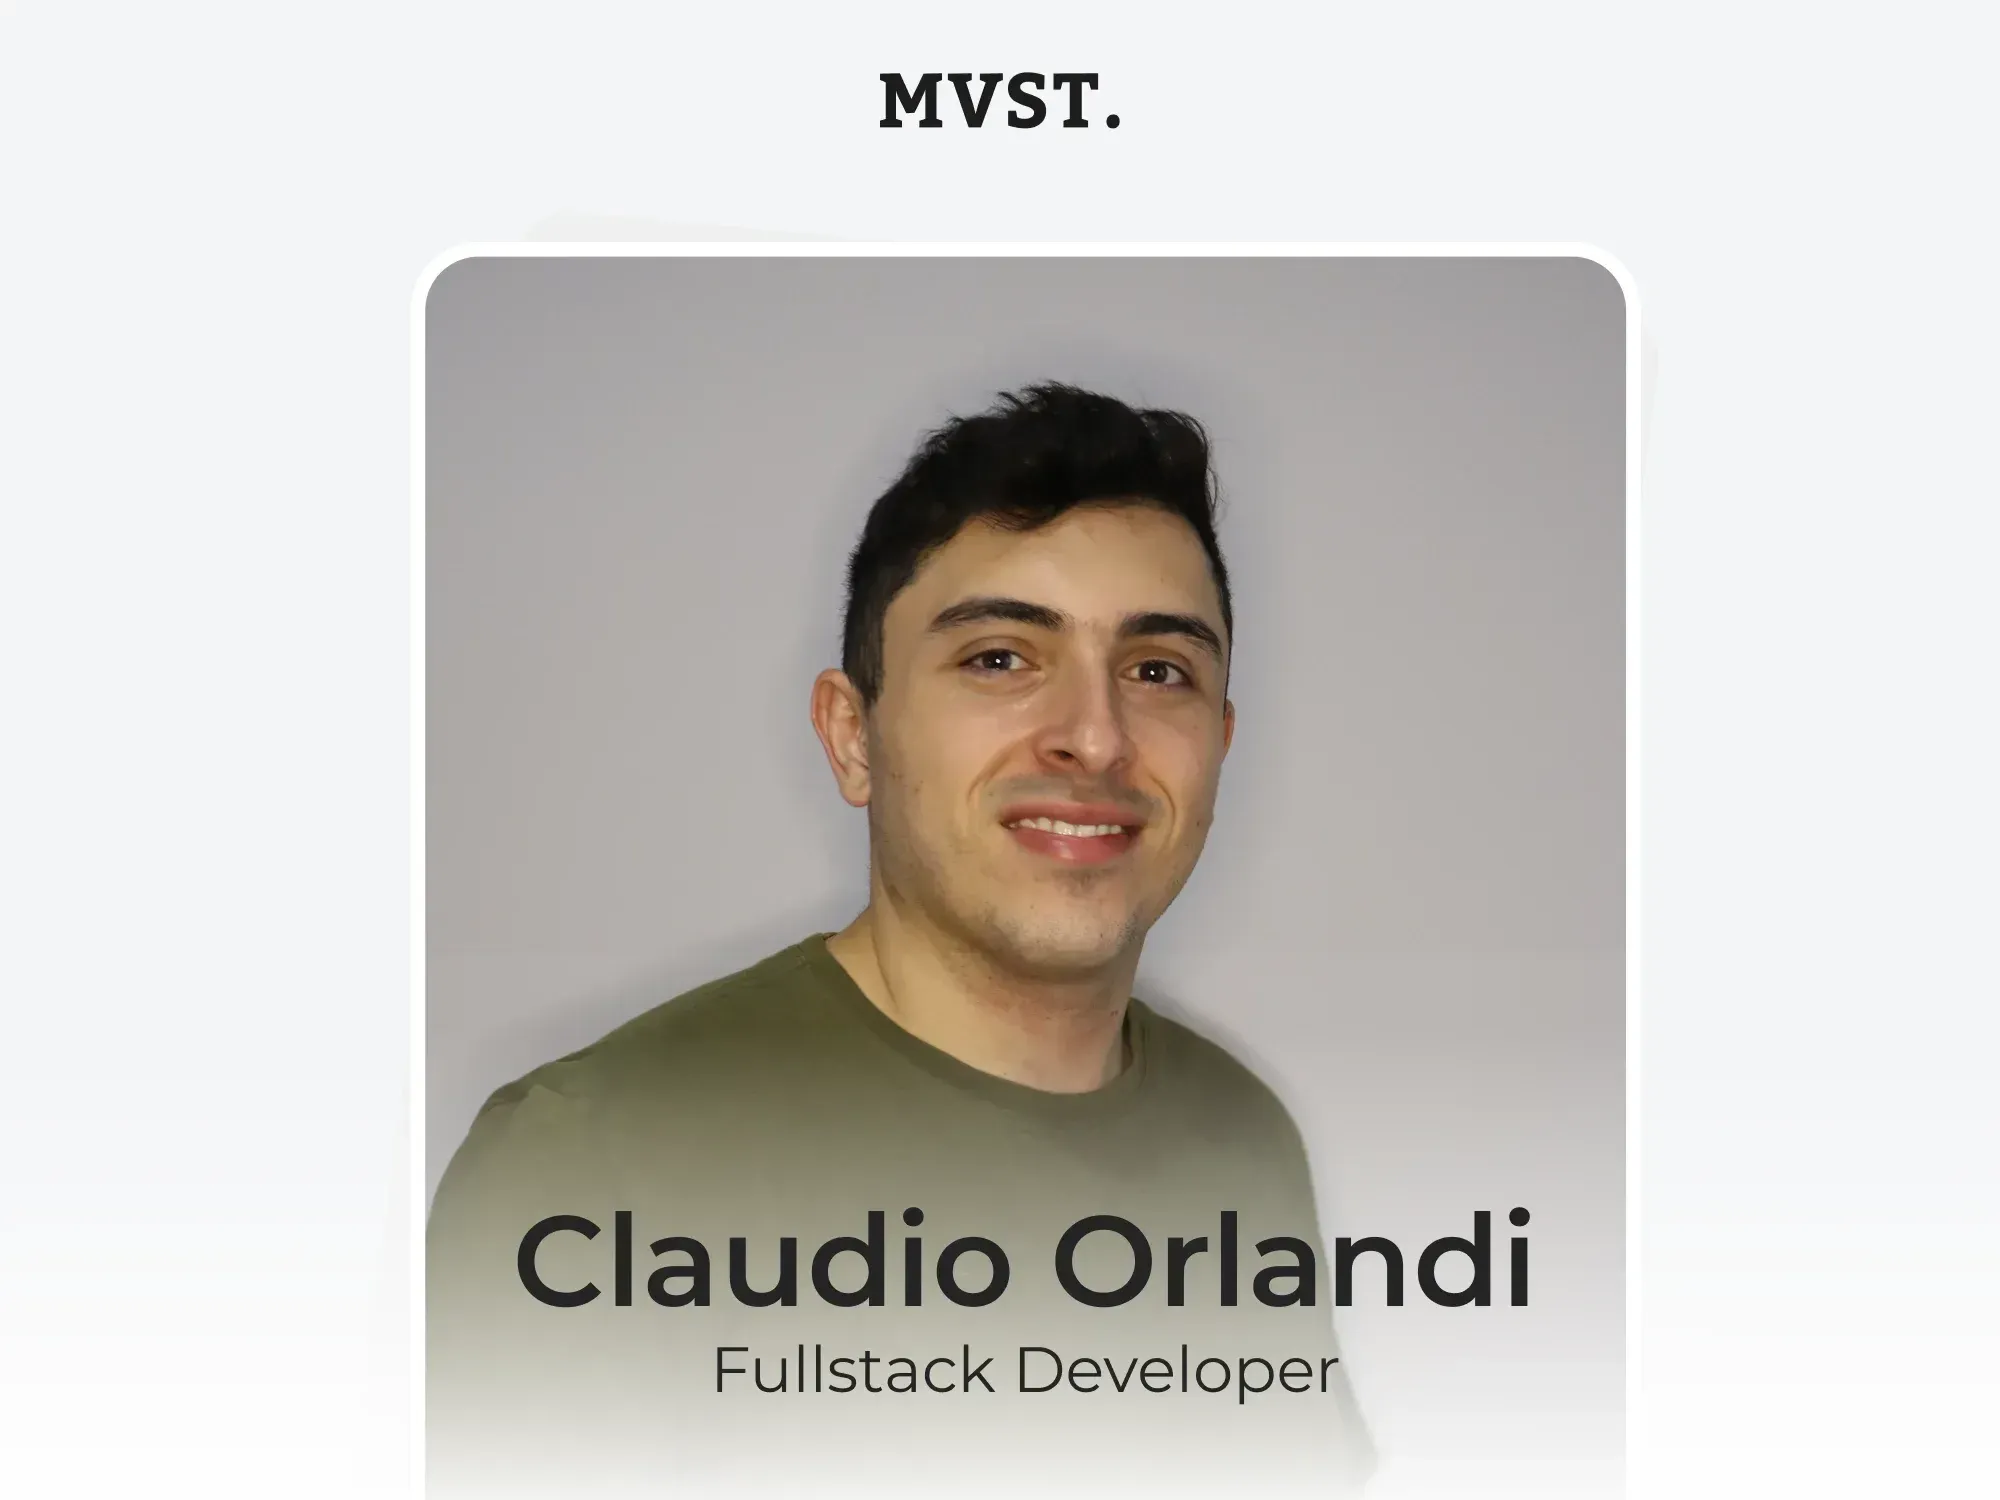 Willkommen bei MVST, Claudio!